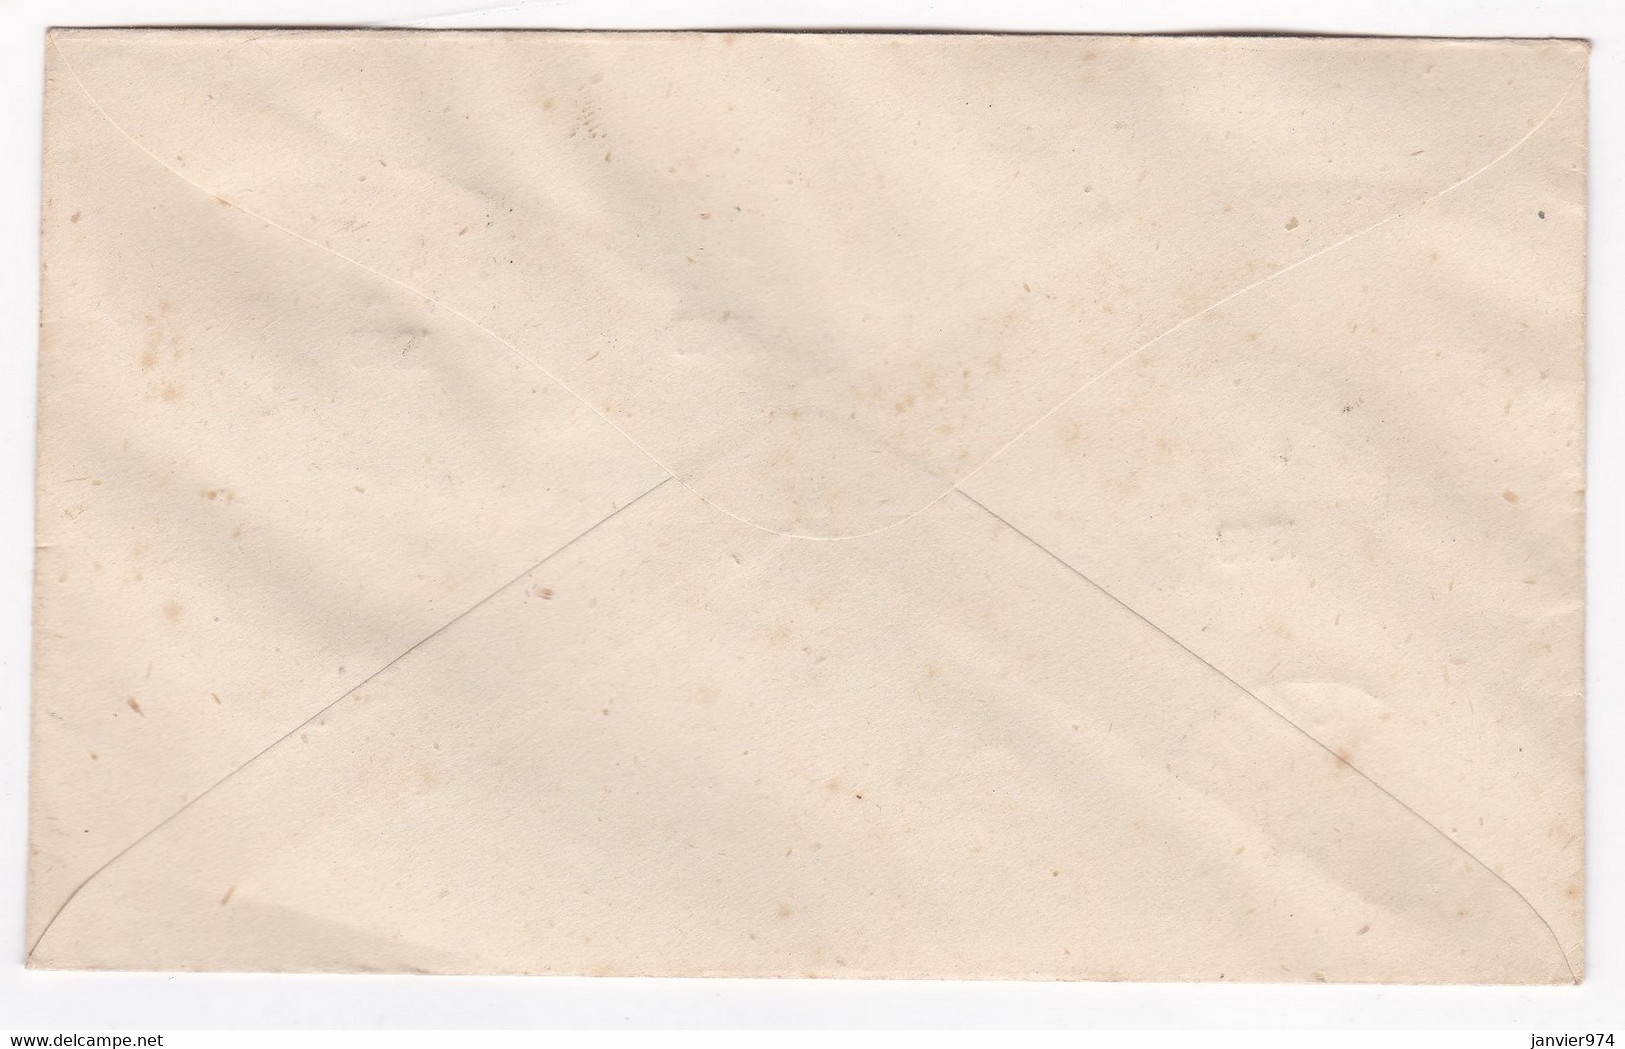 REUNION . Lettre Centenaire Du Timbres 1949 , CFA , Pour Mr Geslin A. Usine Sucrière Du Goll Saint Louis - Cartas & Documentos